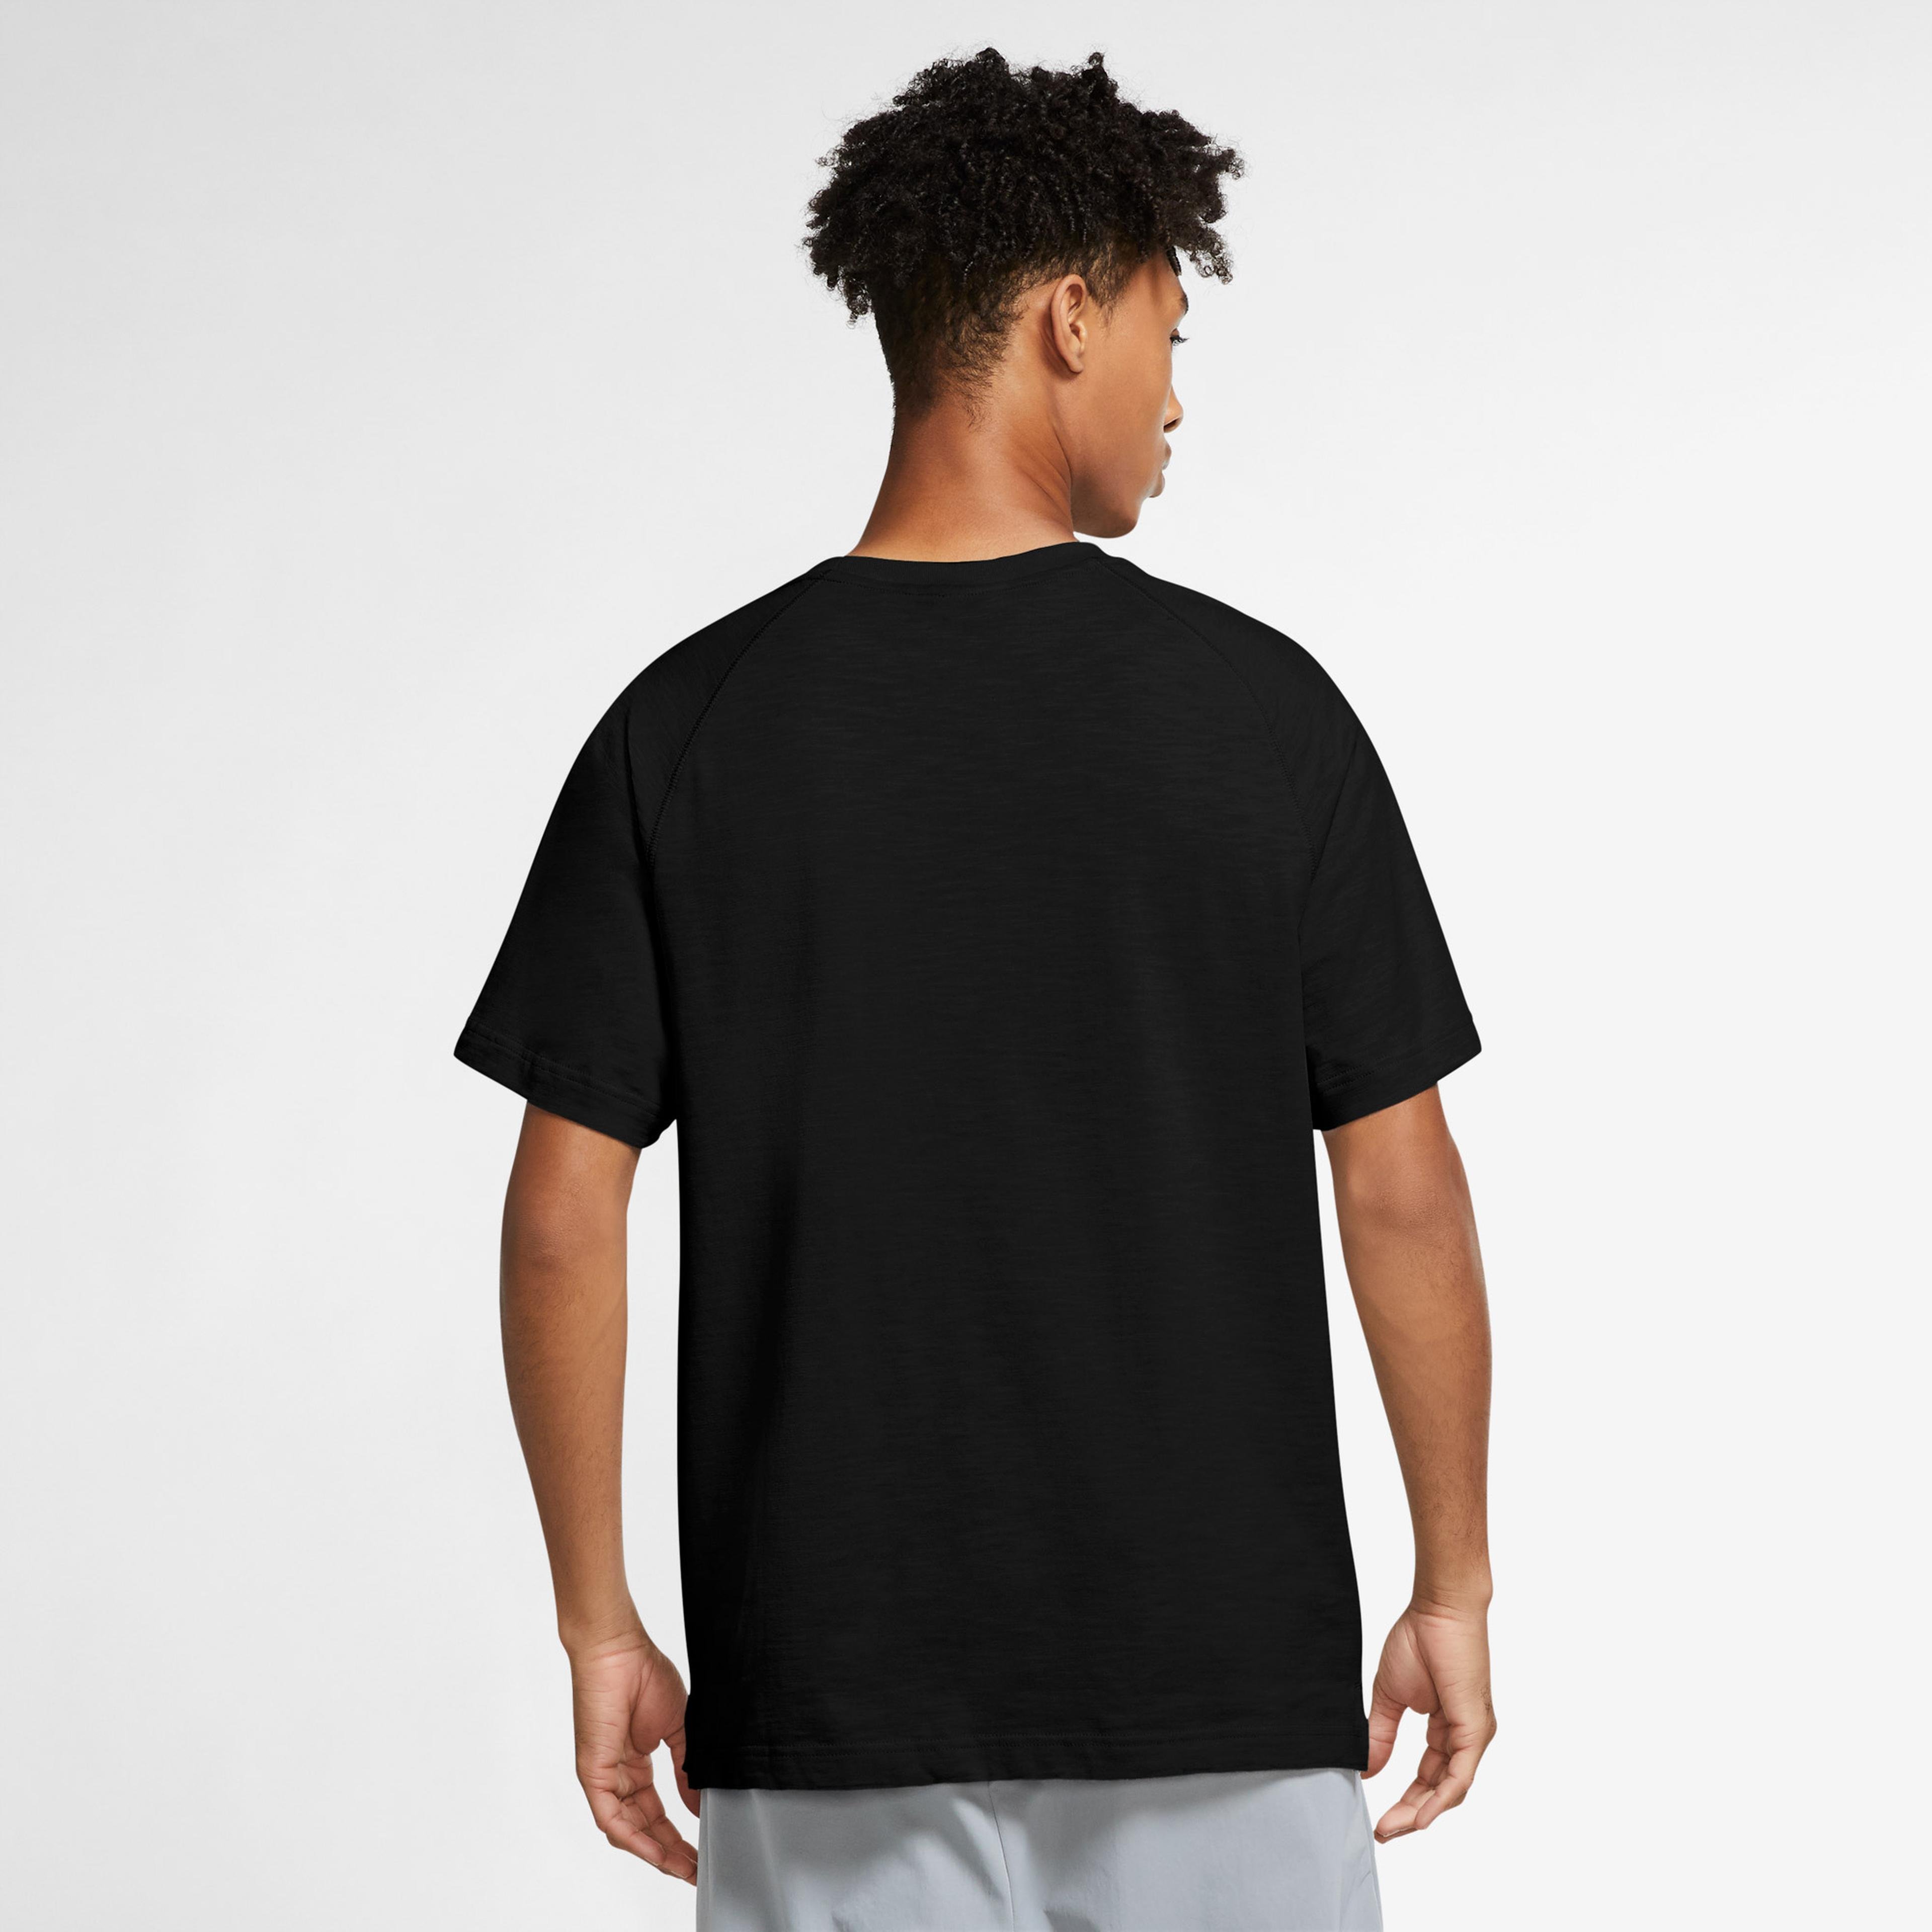 Nike Sportswear Modern Essentials Lightweight Erkek Siyah T-Shirt